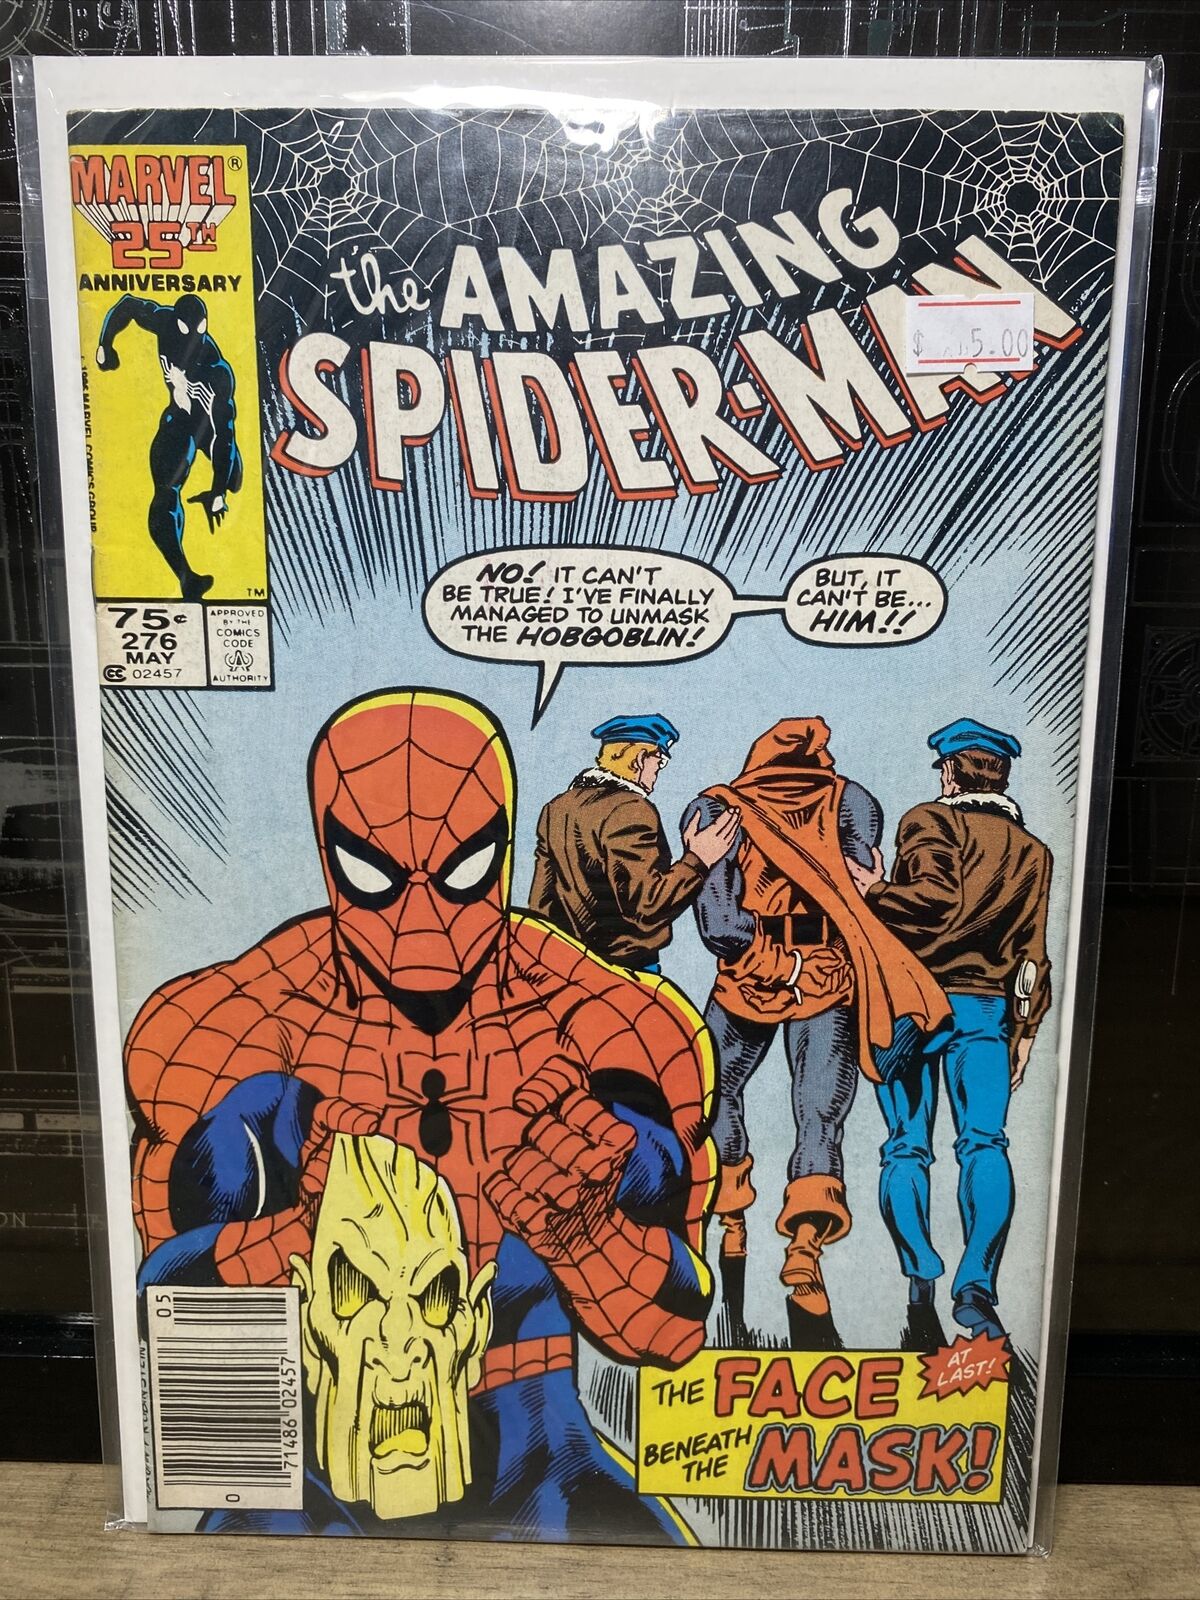 Marvel Comics AMAZING SPIDER-MAN #276 FN 1986 HOBGOBLIN Gemini Shipping